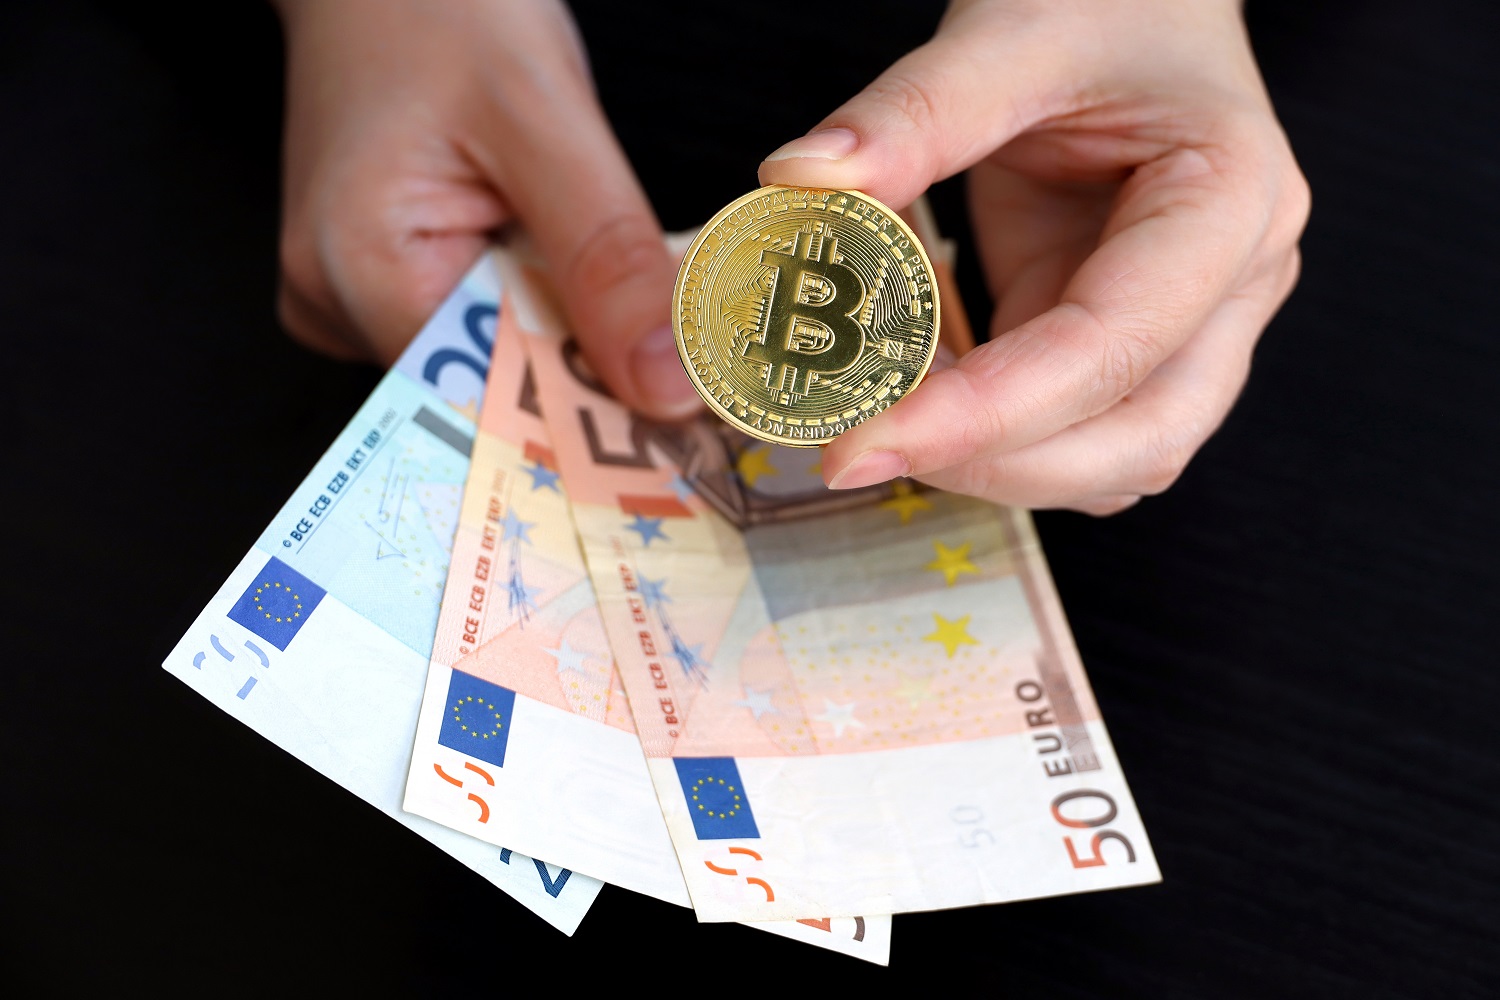 Fransız Kripto Traderları Son Vergi Yılında 442 Milyon Dolar Değerinde Kâr Açıkladı - İşte Son Gelişmeler